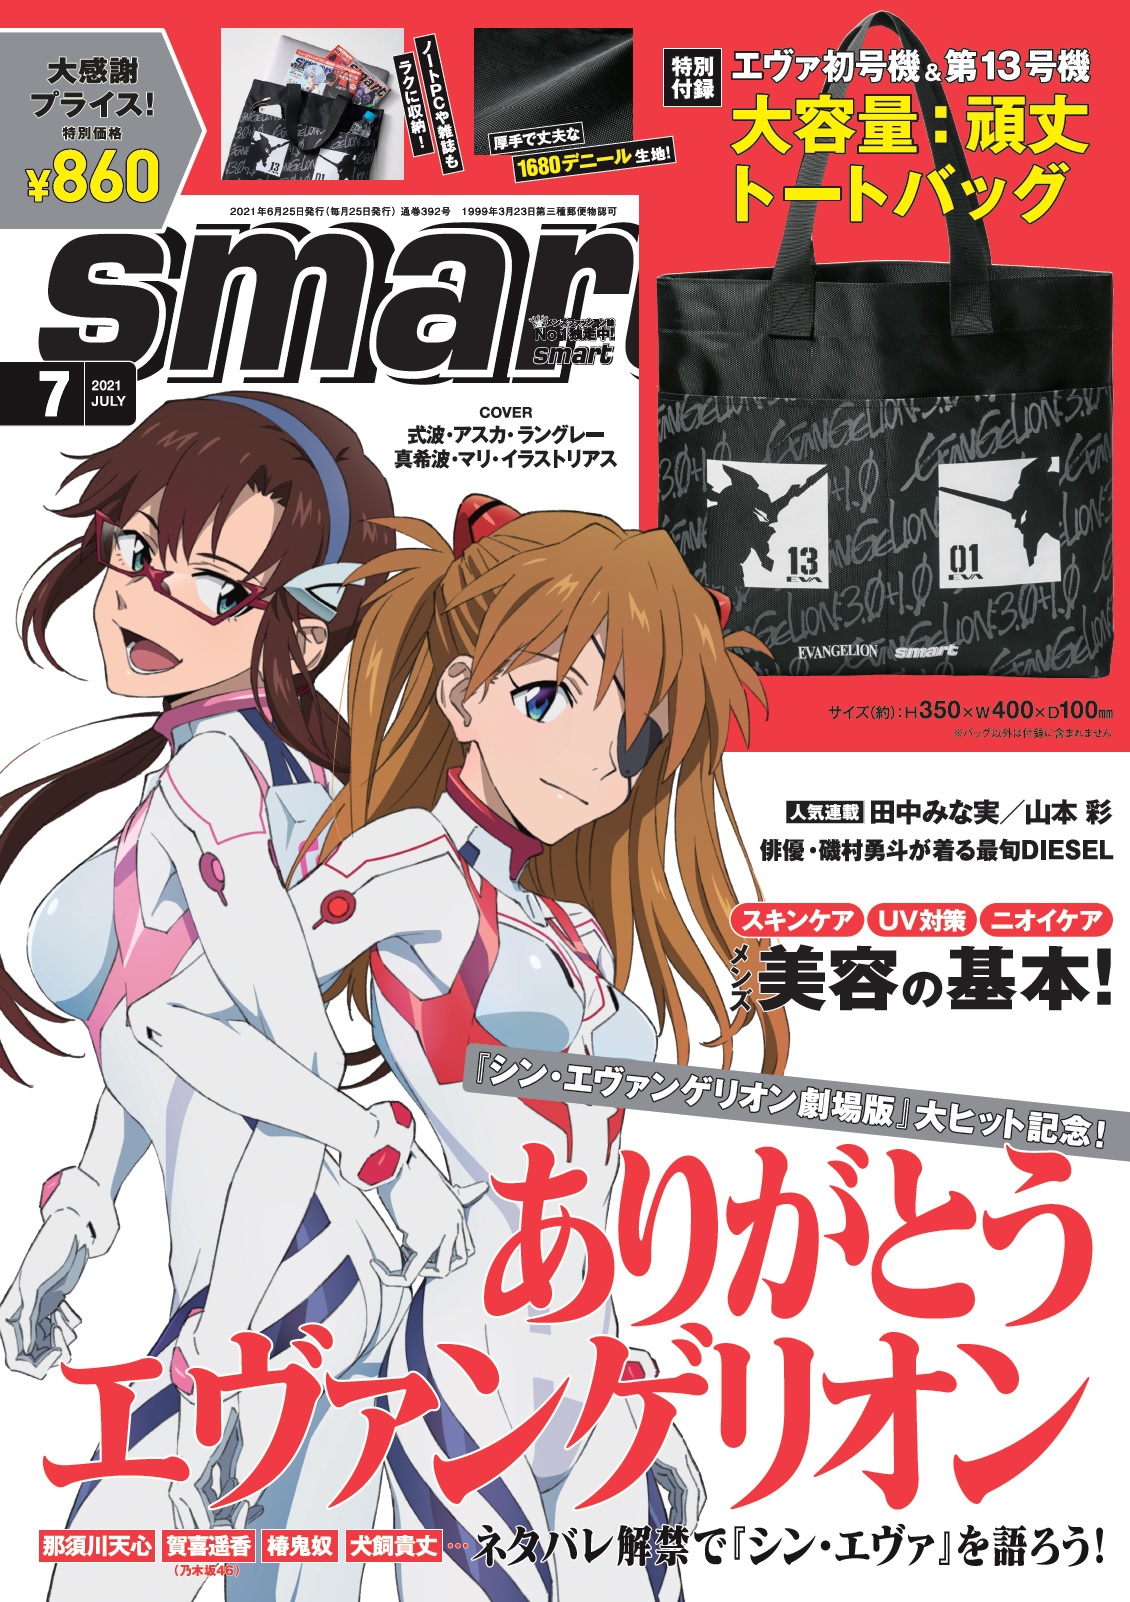 アスカとマリが表紙を飾る Smart7月号 が5月25日 火 発売